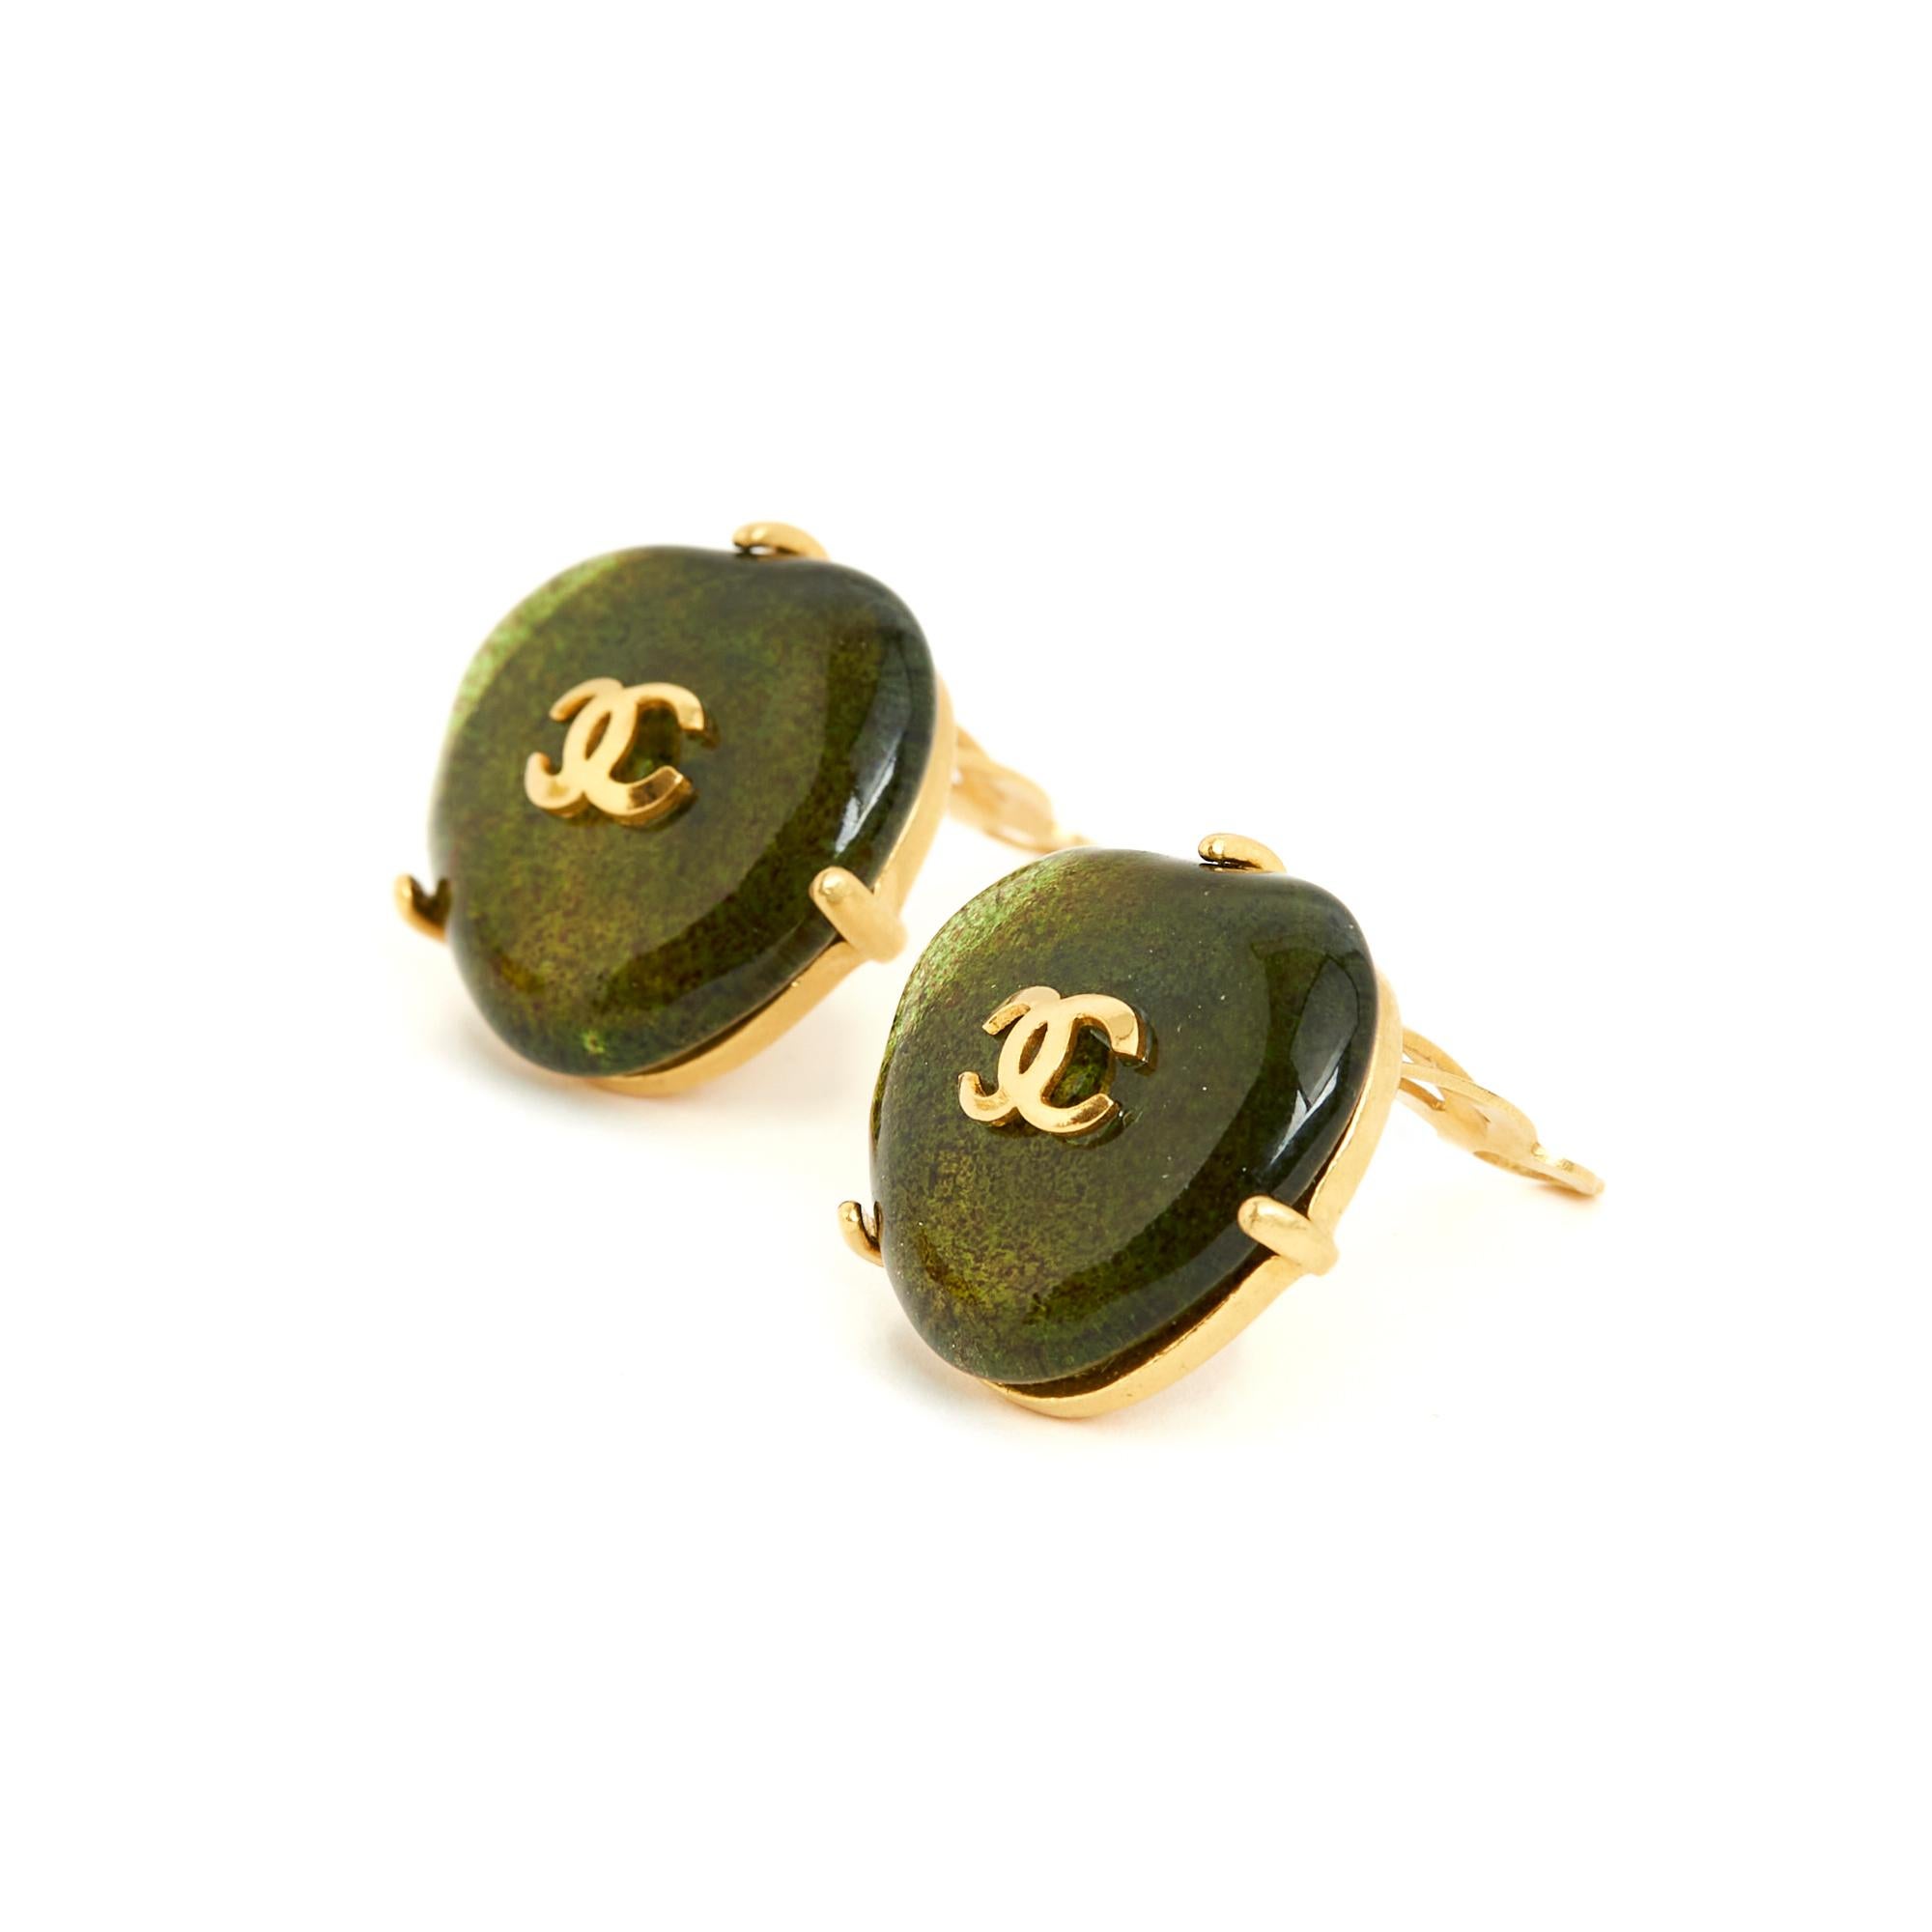 Boucles d'oreilles Chanel à clip de la collection printemps-été 1997 par Gripoix en pâte de verre surmontée d'un petit logo CC en métal doré. Largeur 2,2 cm x hauteur 2,2 cm. Les boucles d'oreilles sont très vintage, elles sont livrées sans facture